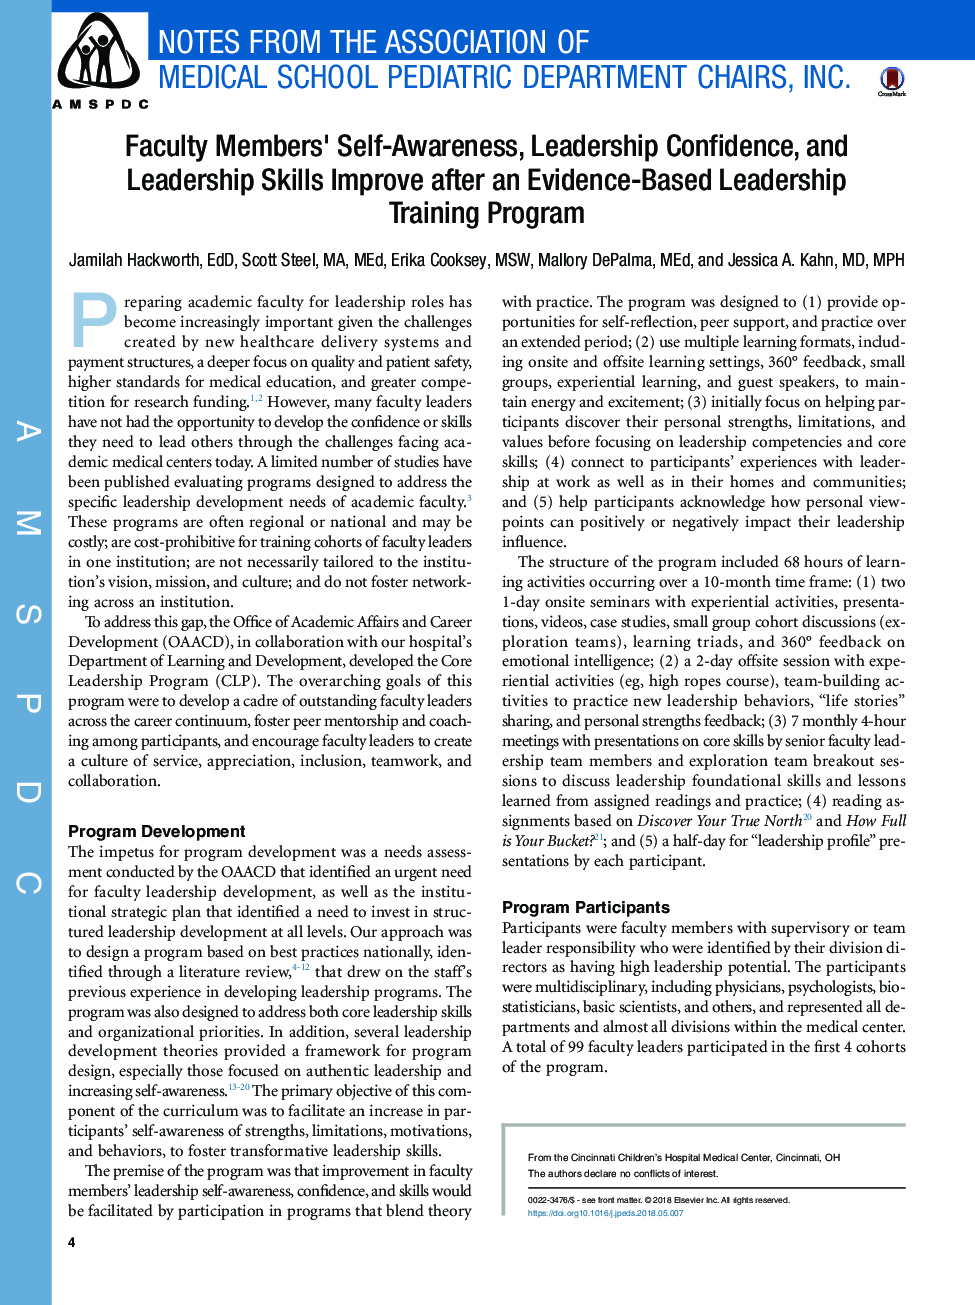 خودآگاهی اعضای هیات علمی، اعتماد رهبری و مهارتهای رهبری پس از برنامه آموزش رهبری مبتنی بر شواهد بهبود یافته است 